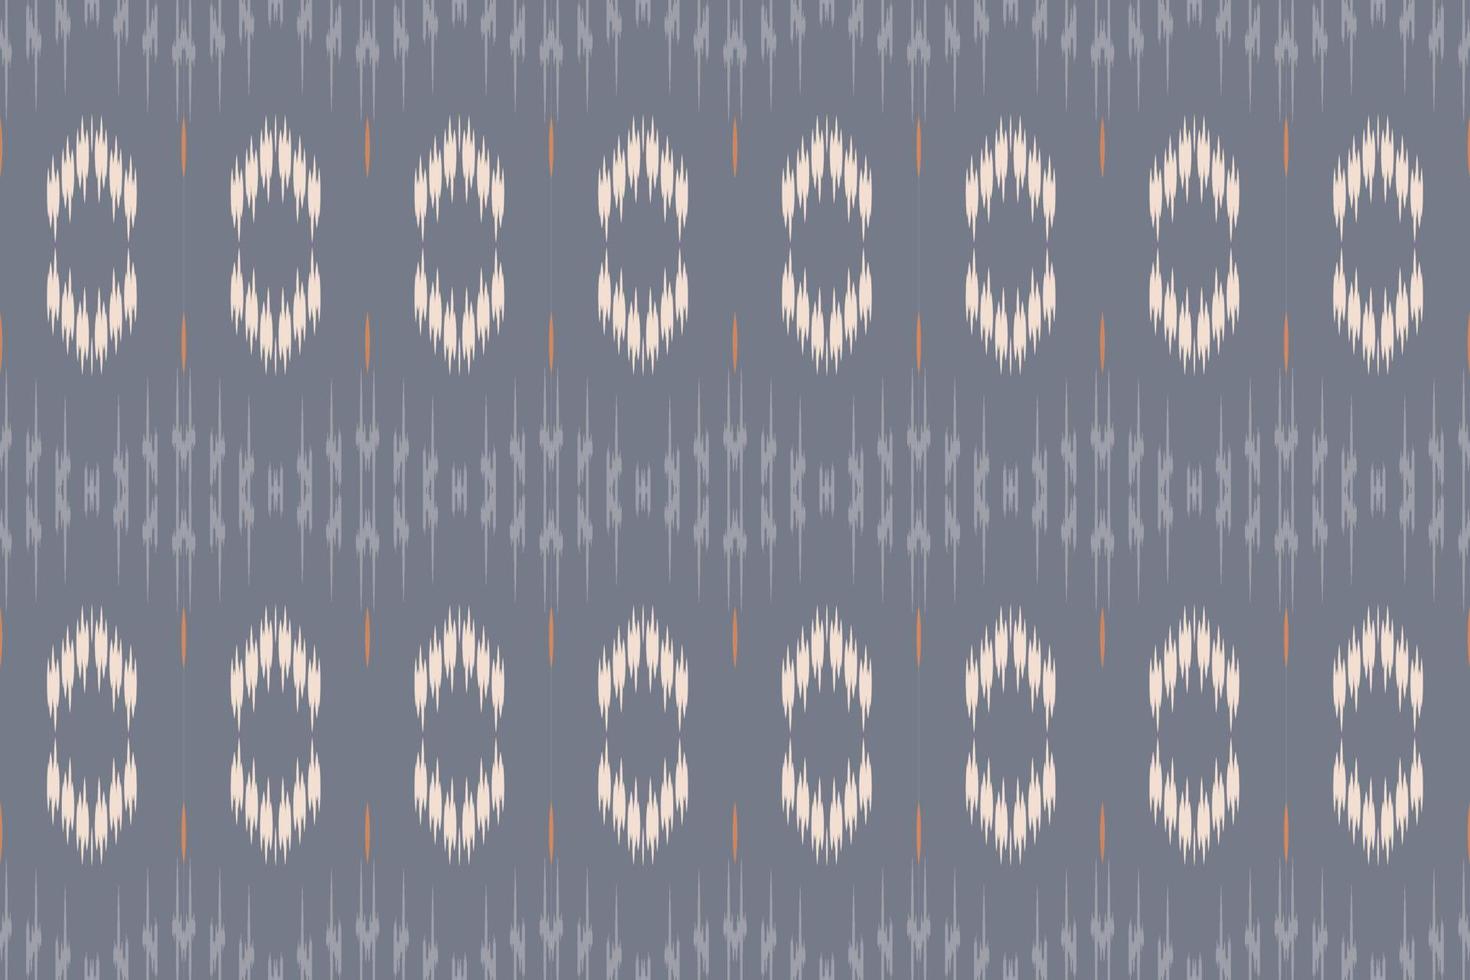 tissu ikat tribal bornéo africain scandinave batik texture bohème conception de vecteur numérique pour impression saree kurti tissu brosse symboles échantillons